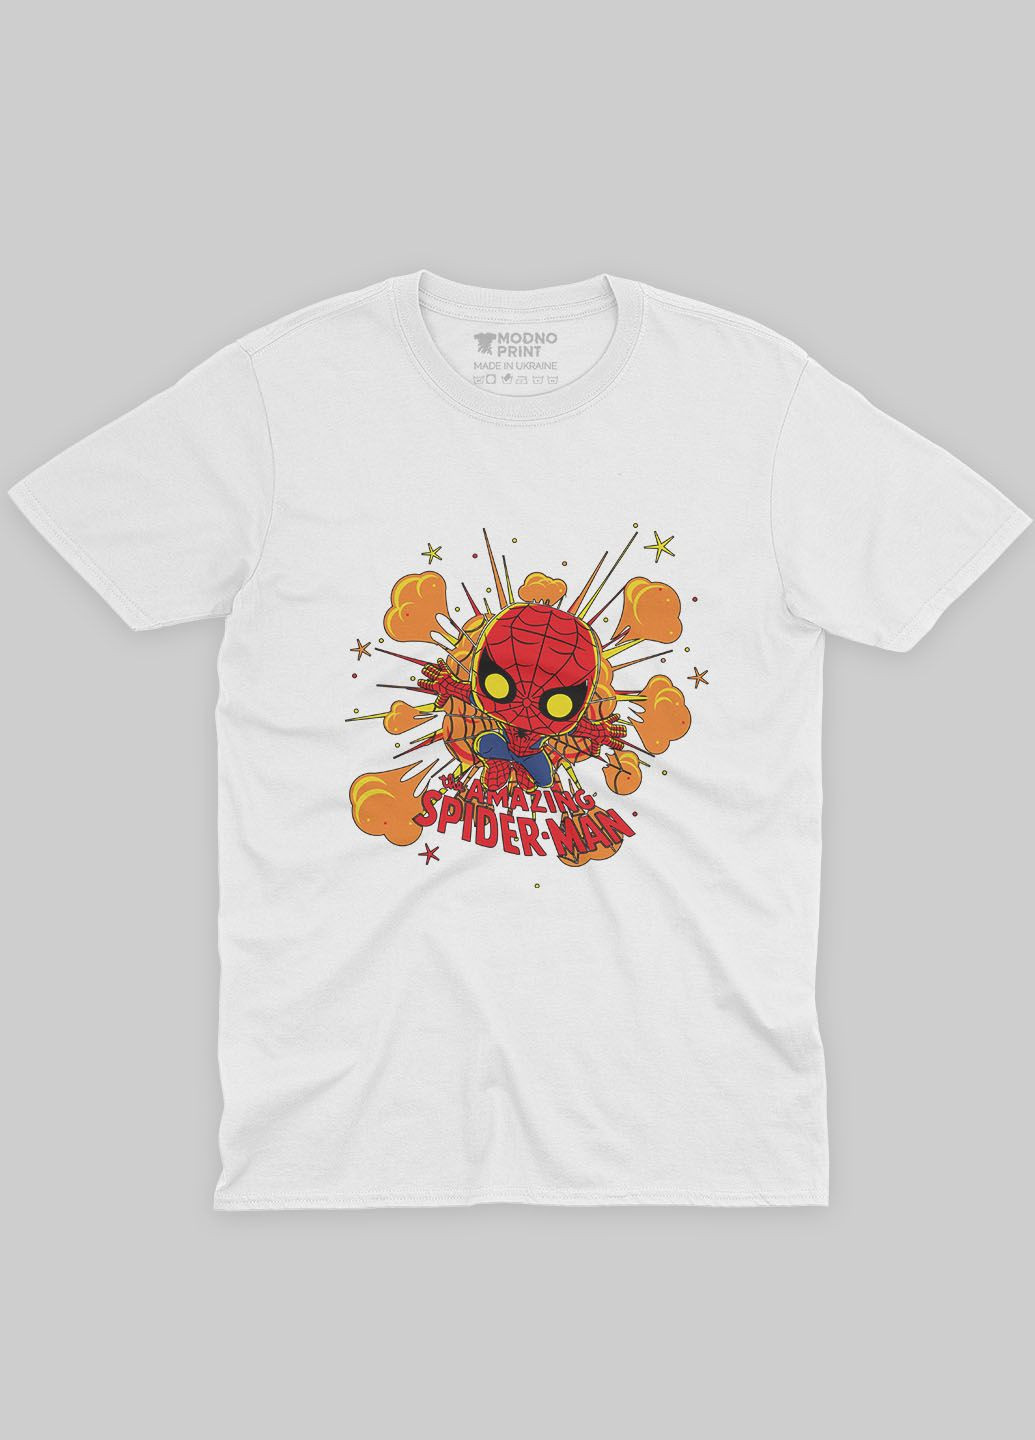 Белая демисезонная футболка для девочки с принтом супергероя - человек-паук (ts001-1-whi-006-014-056-g) Modno